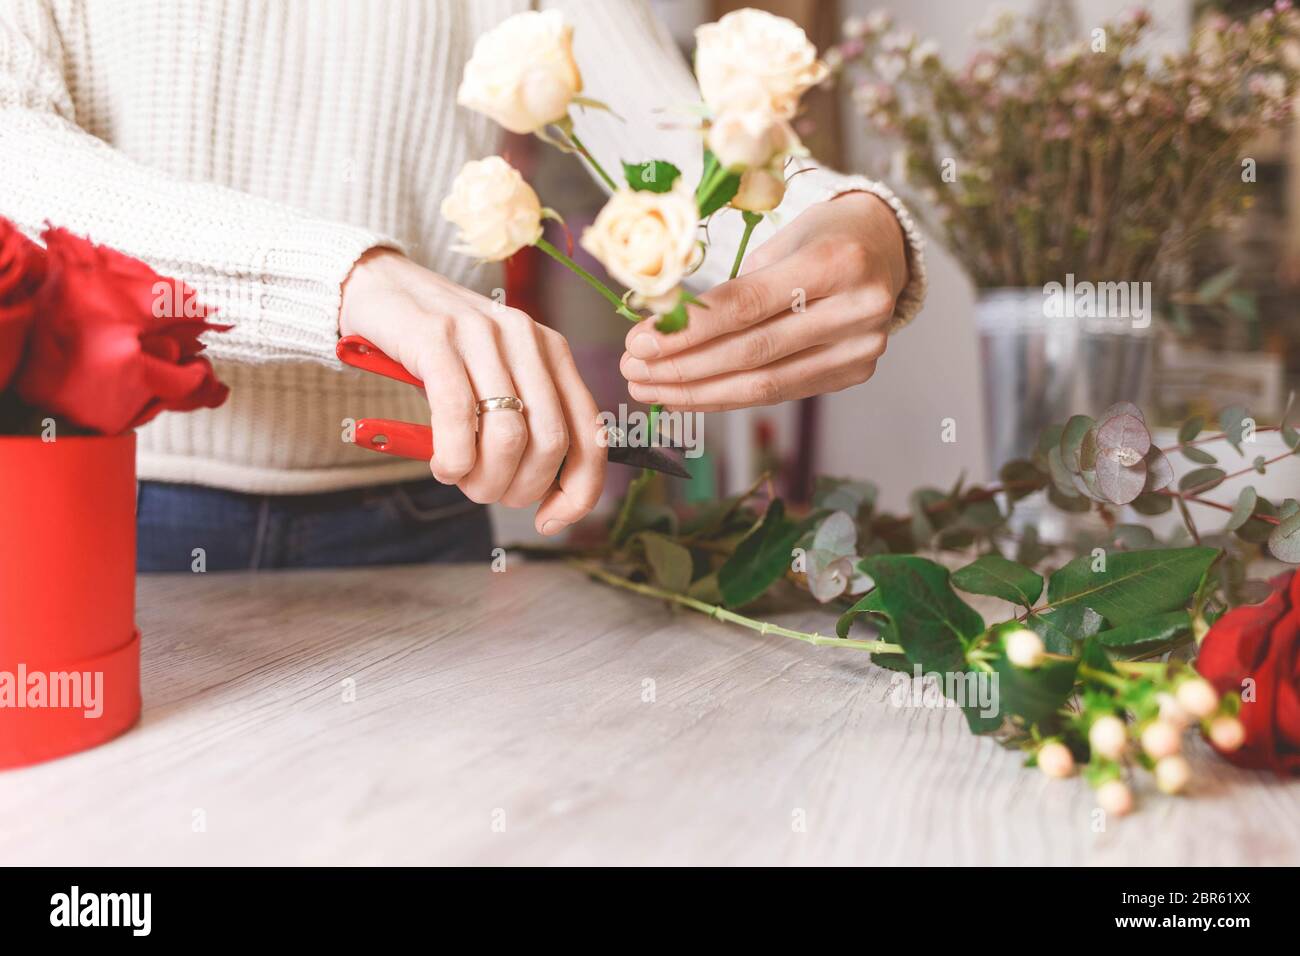 El vendedor de la tienda de flores prepara rosas para crear un ramo podándolas con podas Foto de stock